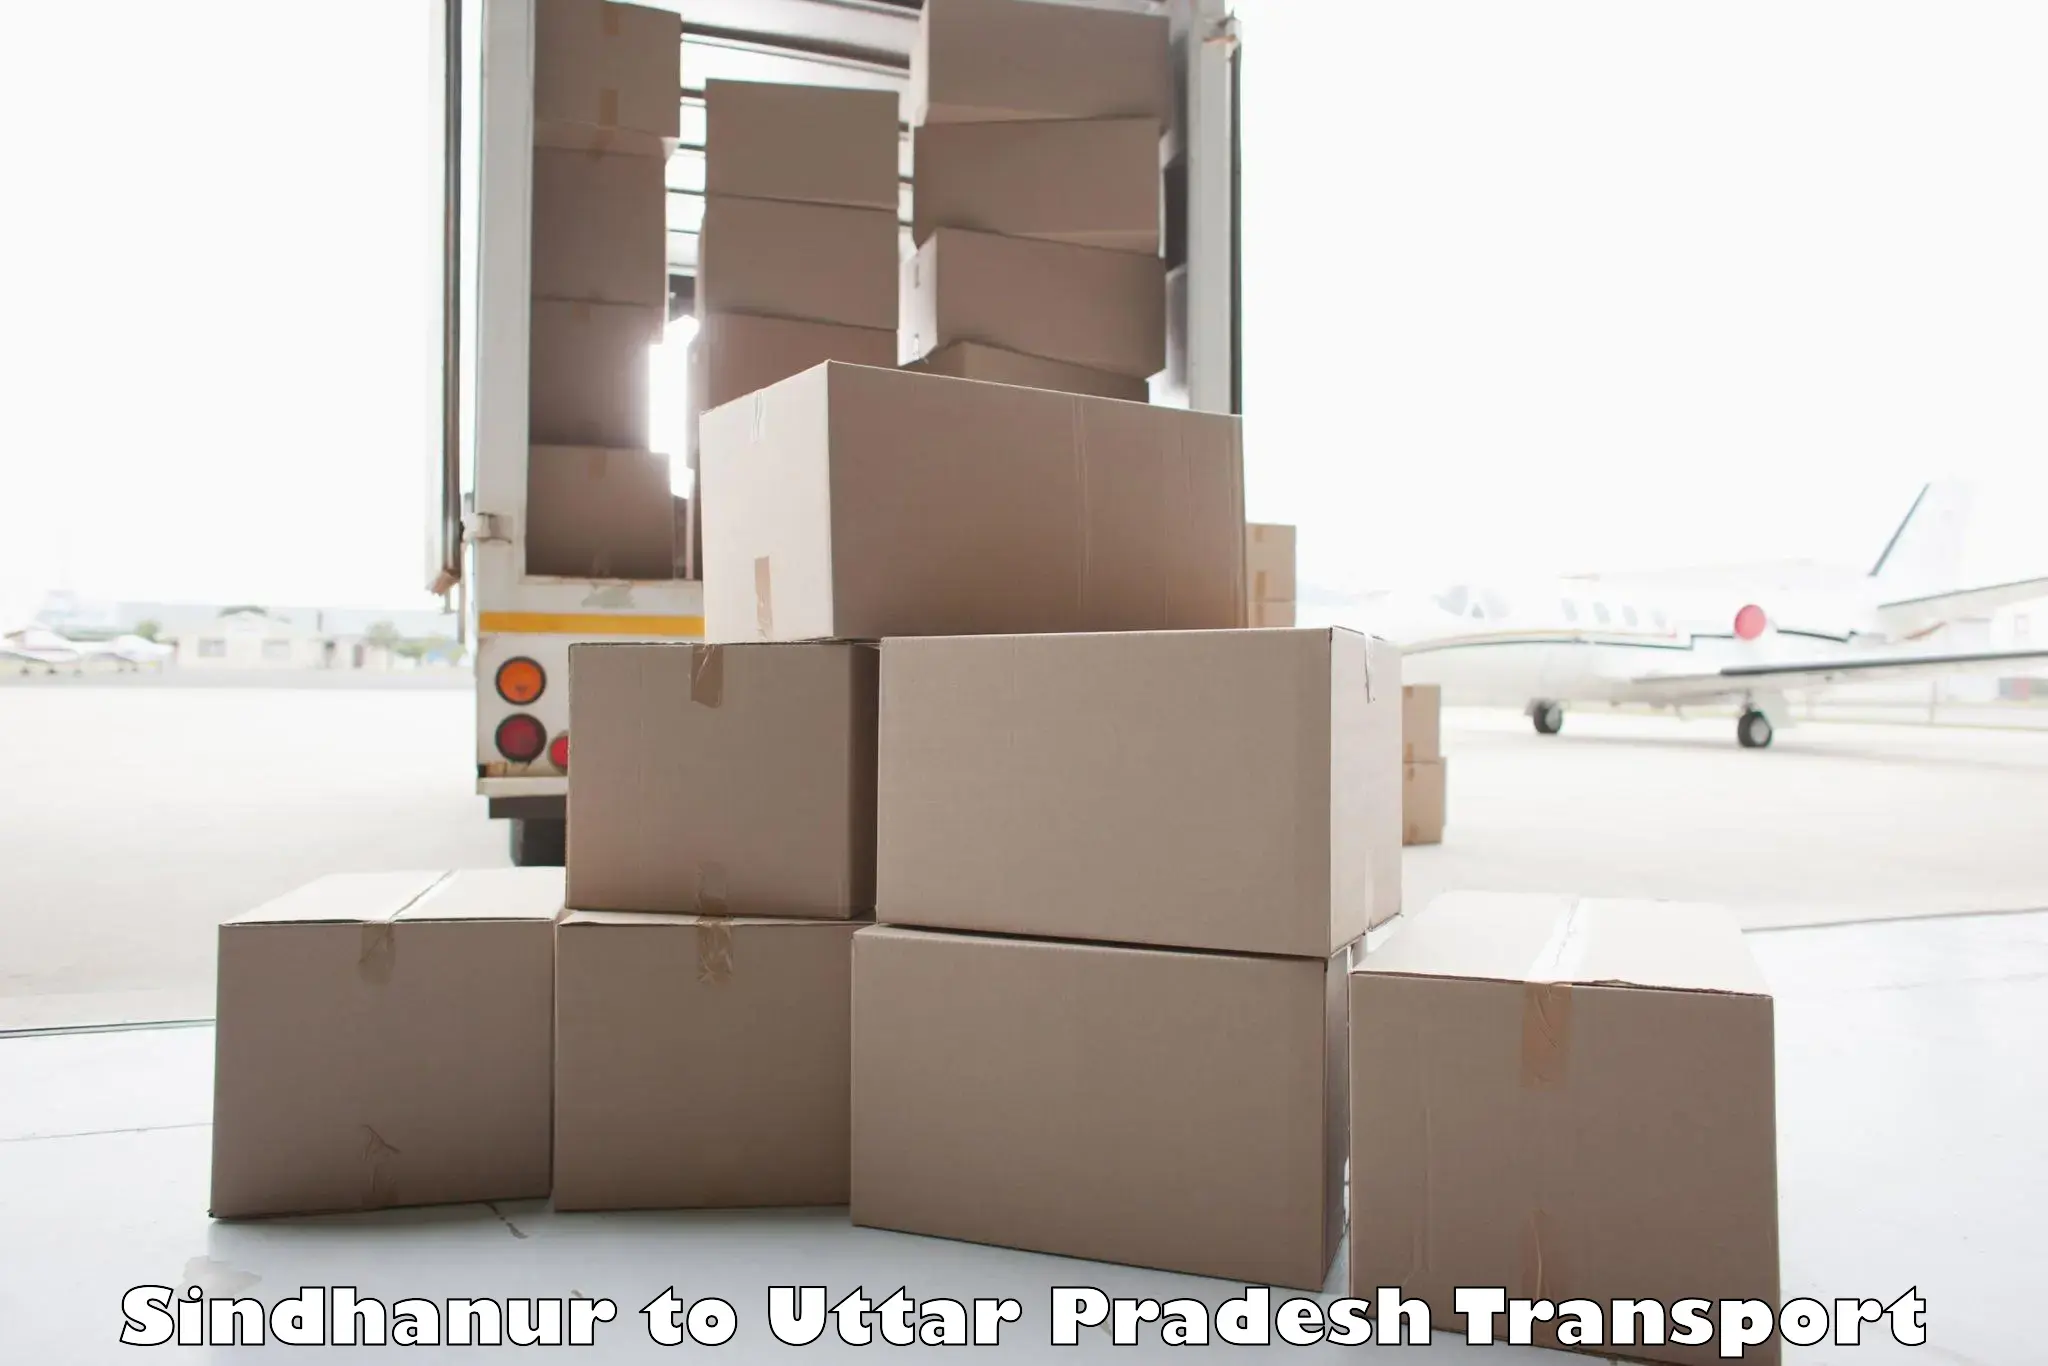 Lorry transport service Sindhanur to Lakhimpur